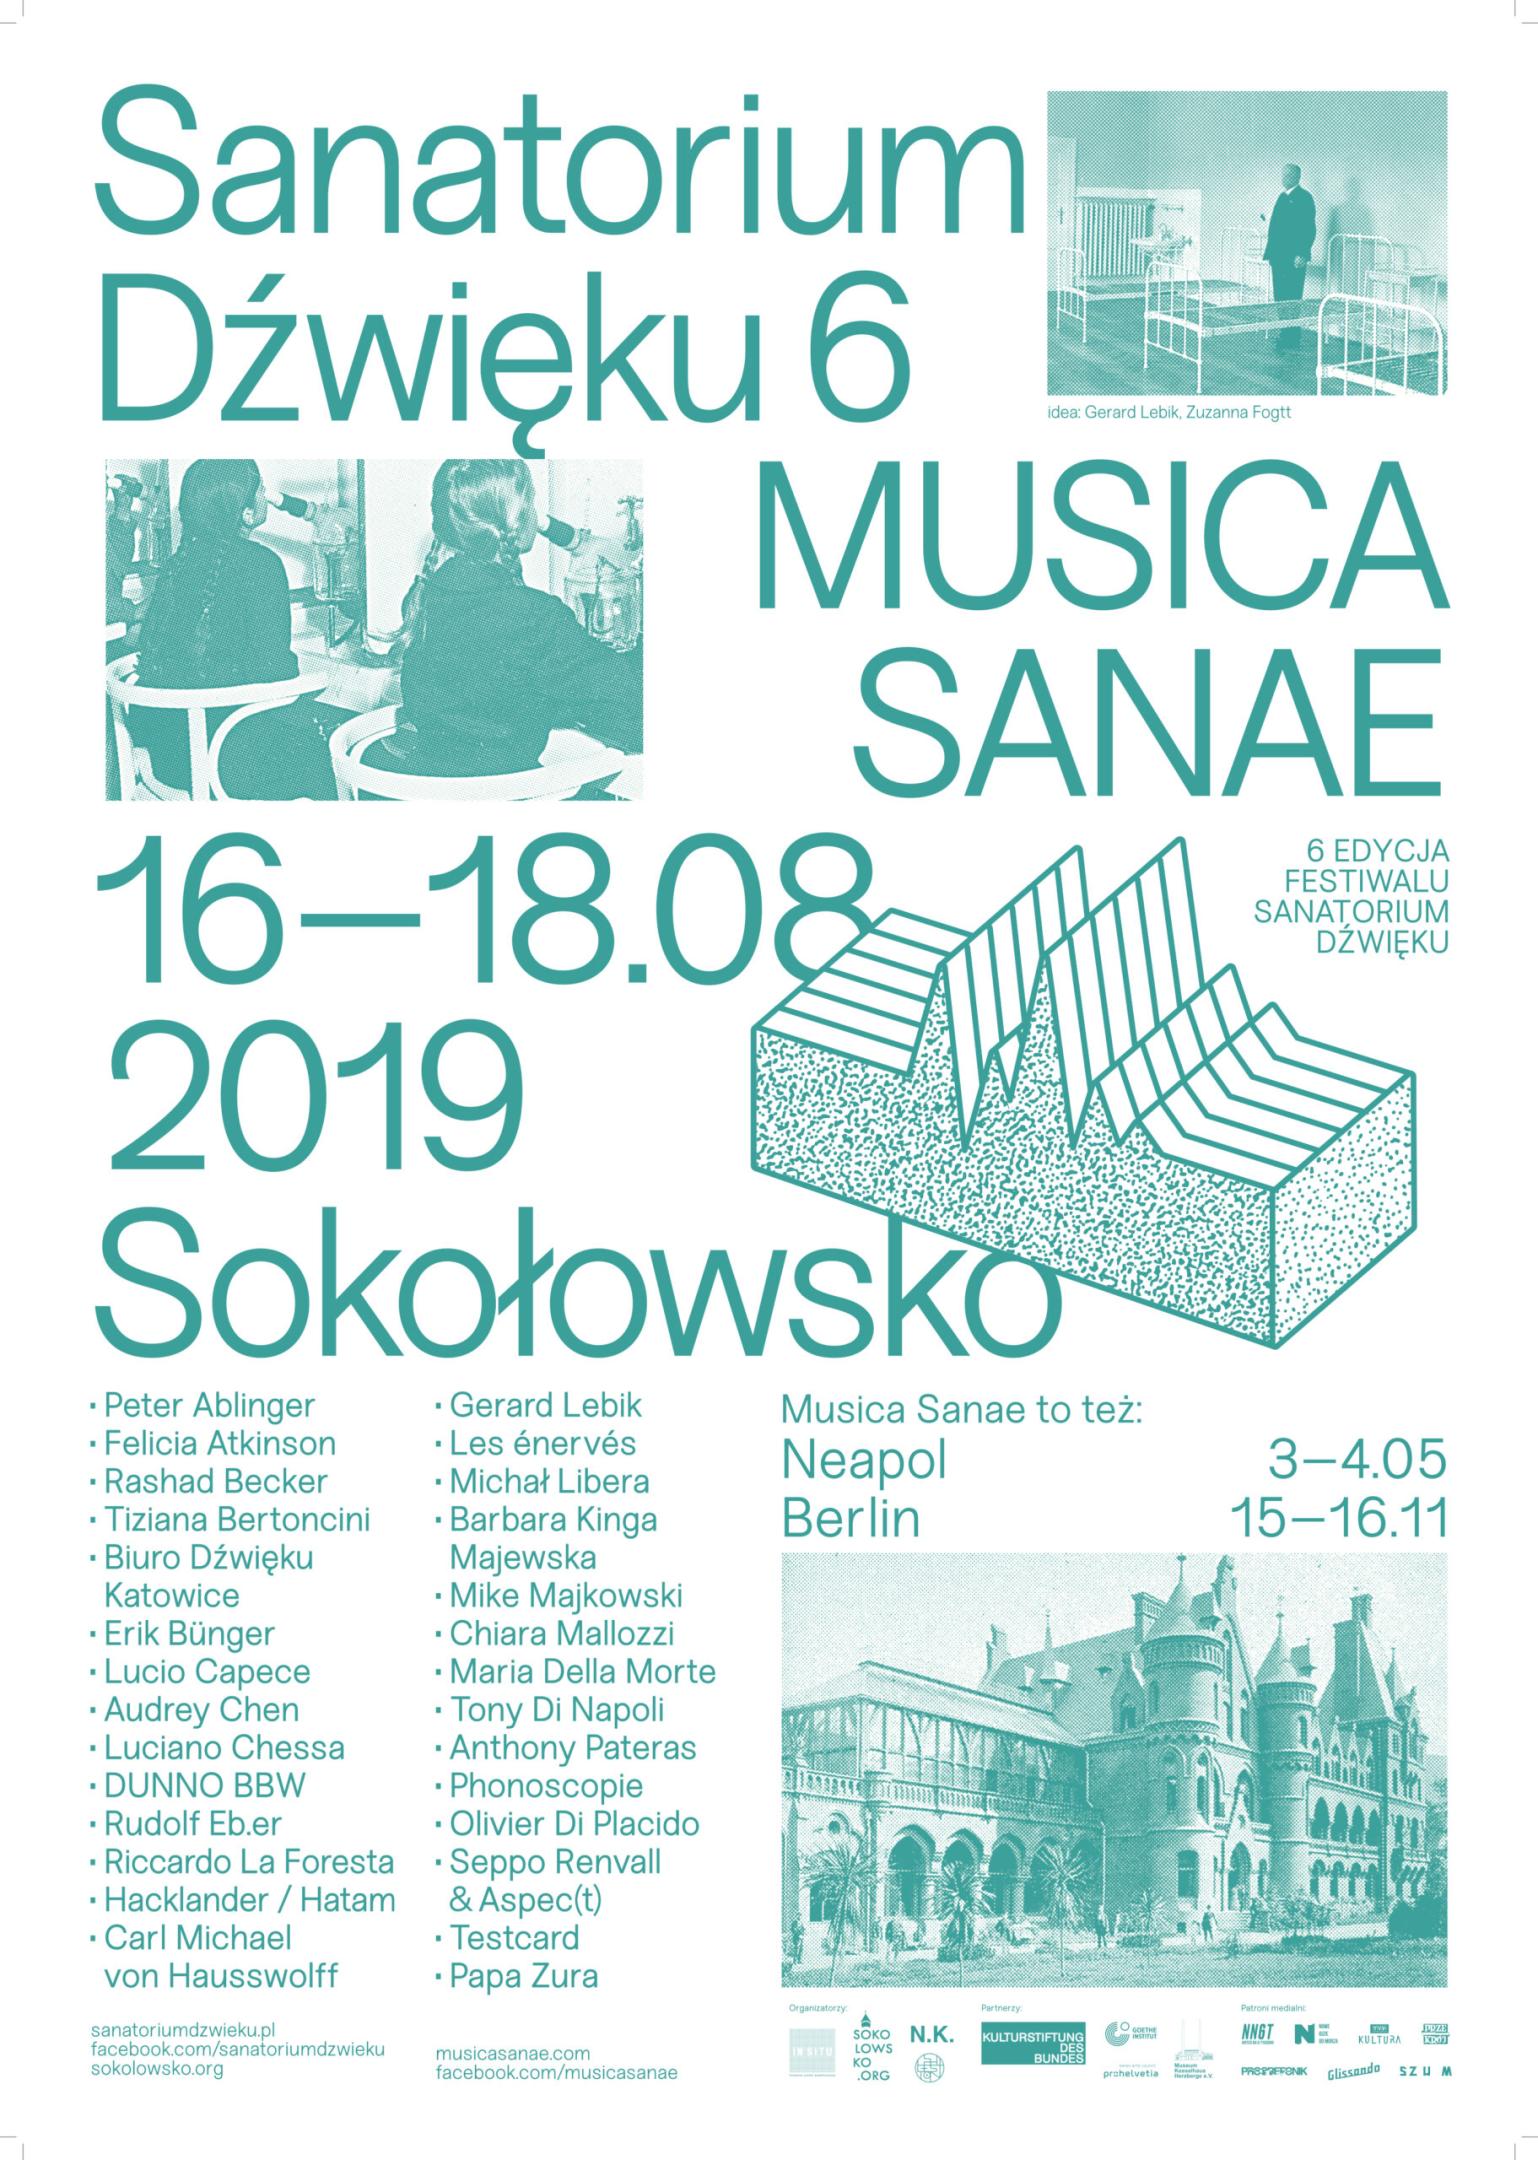 Sanatorium of Sound Festival 6 – Music Sanae